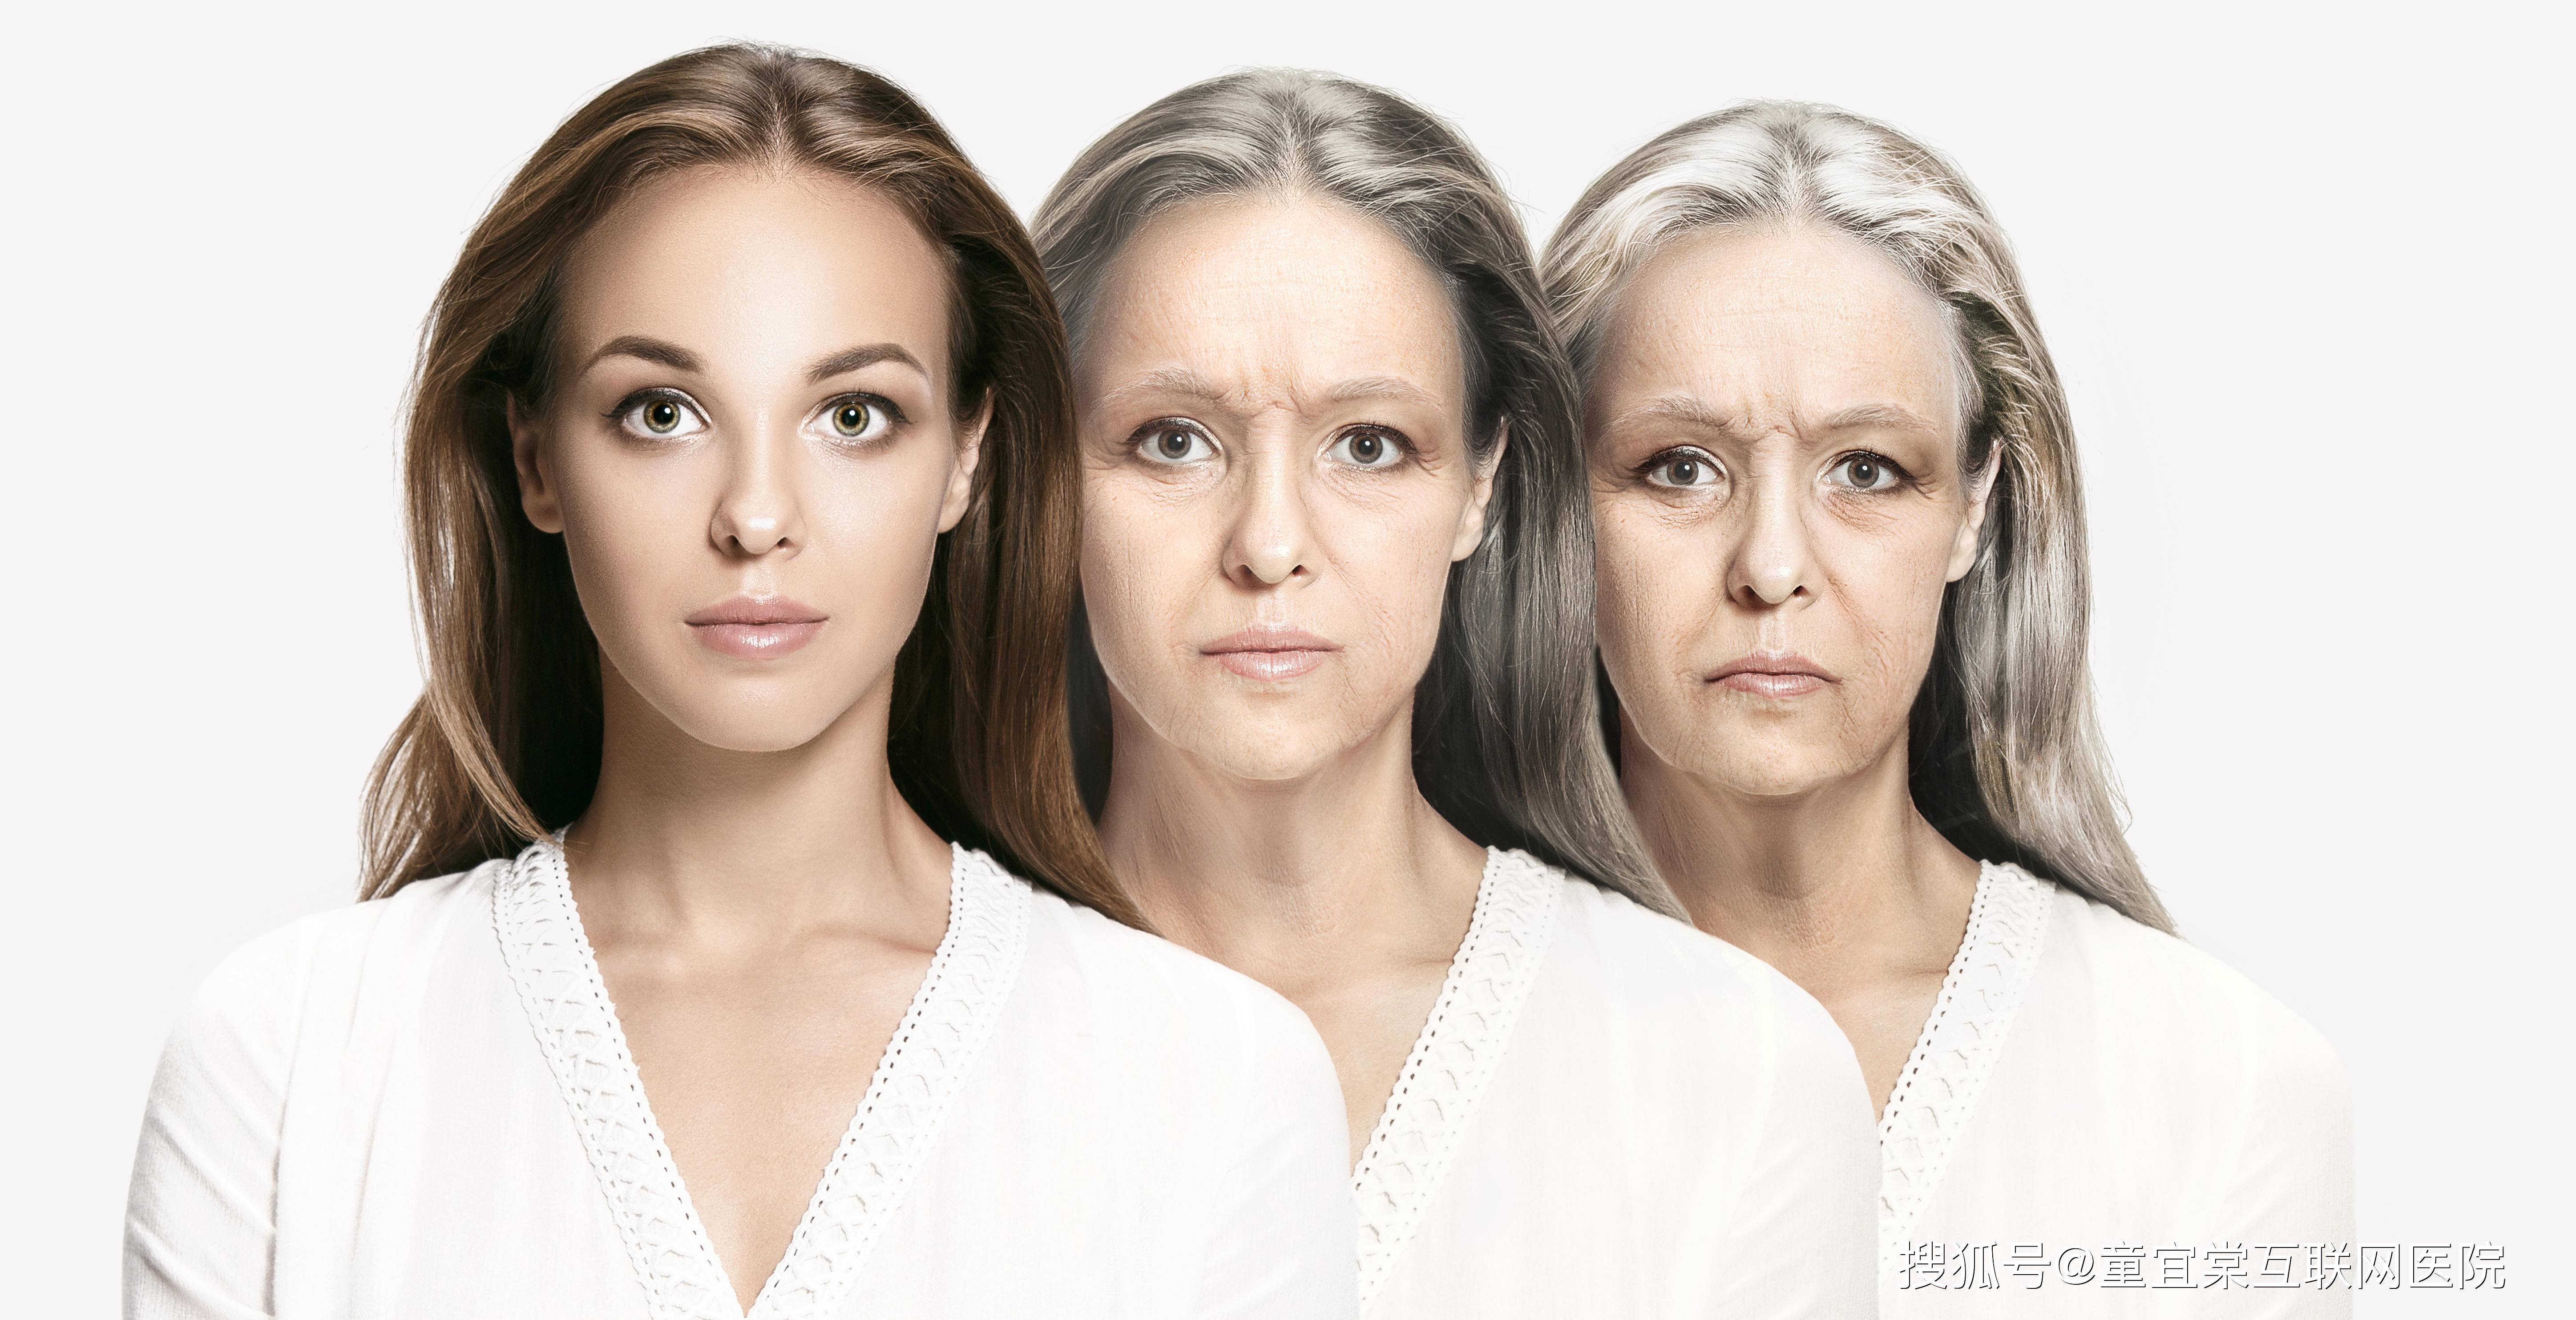 女性抗衰老,只需要这三步!